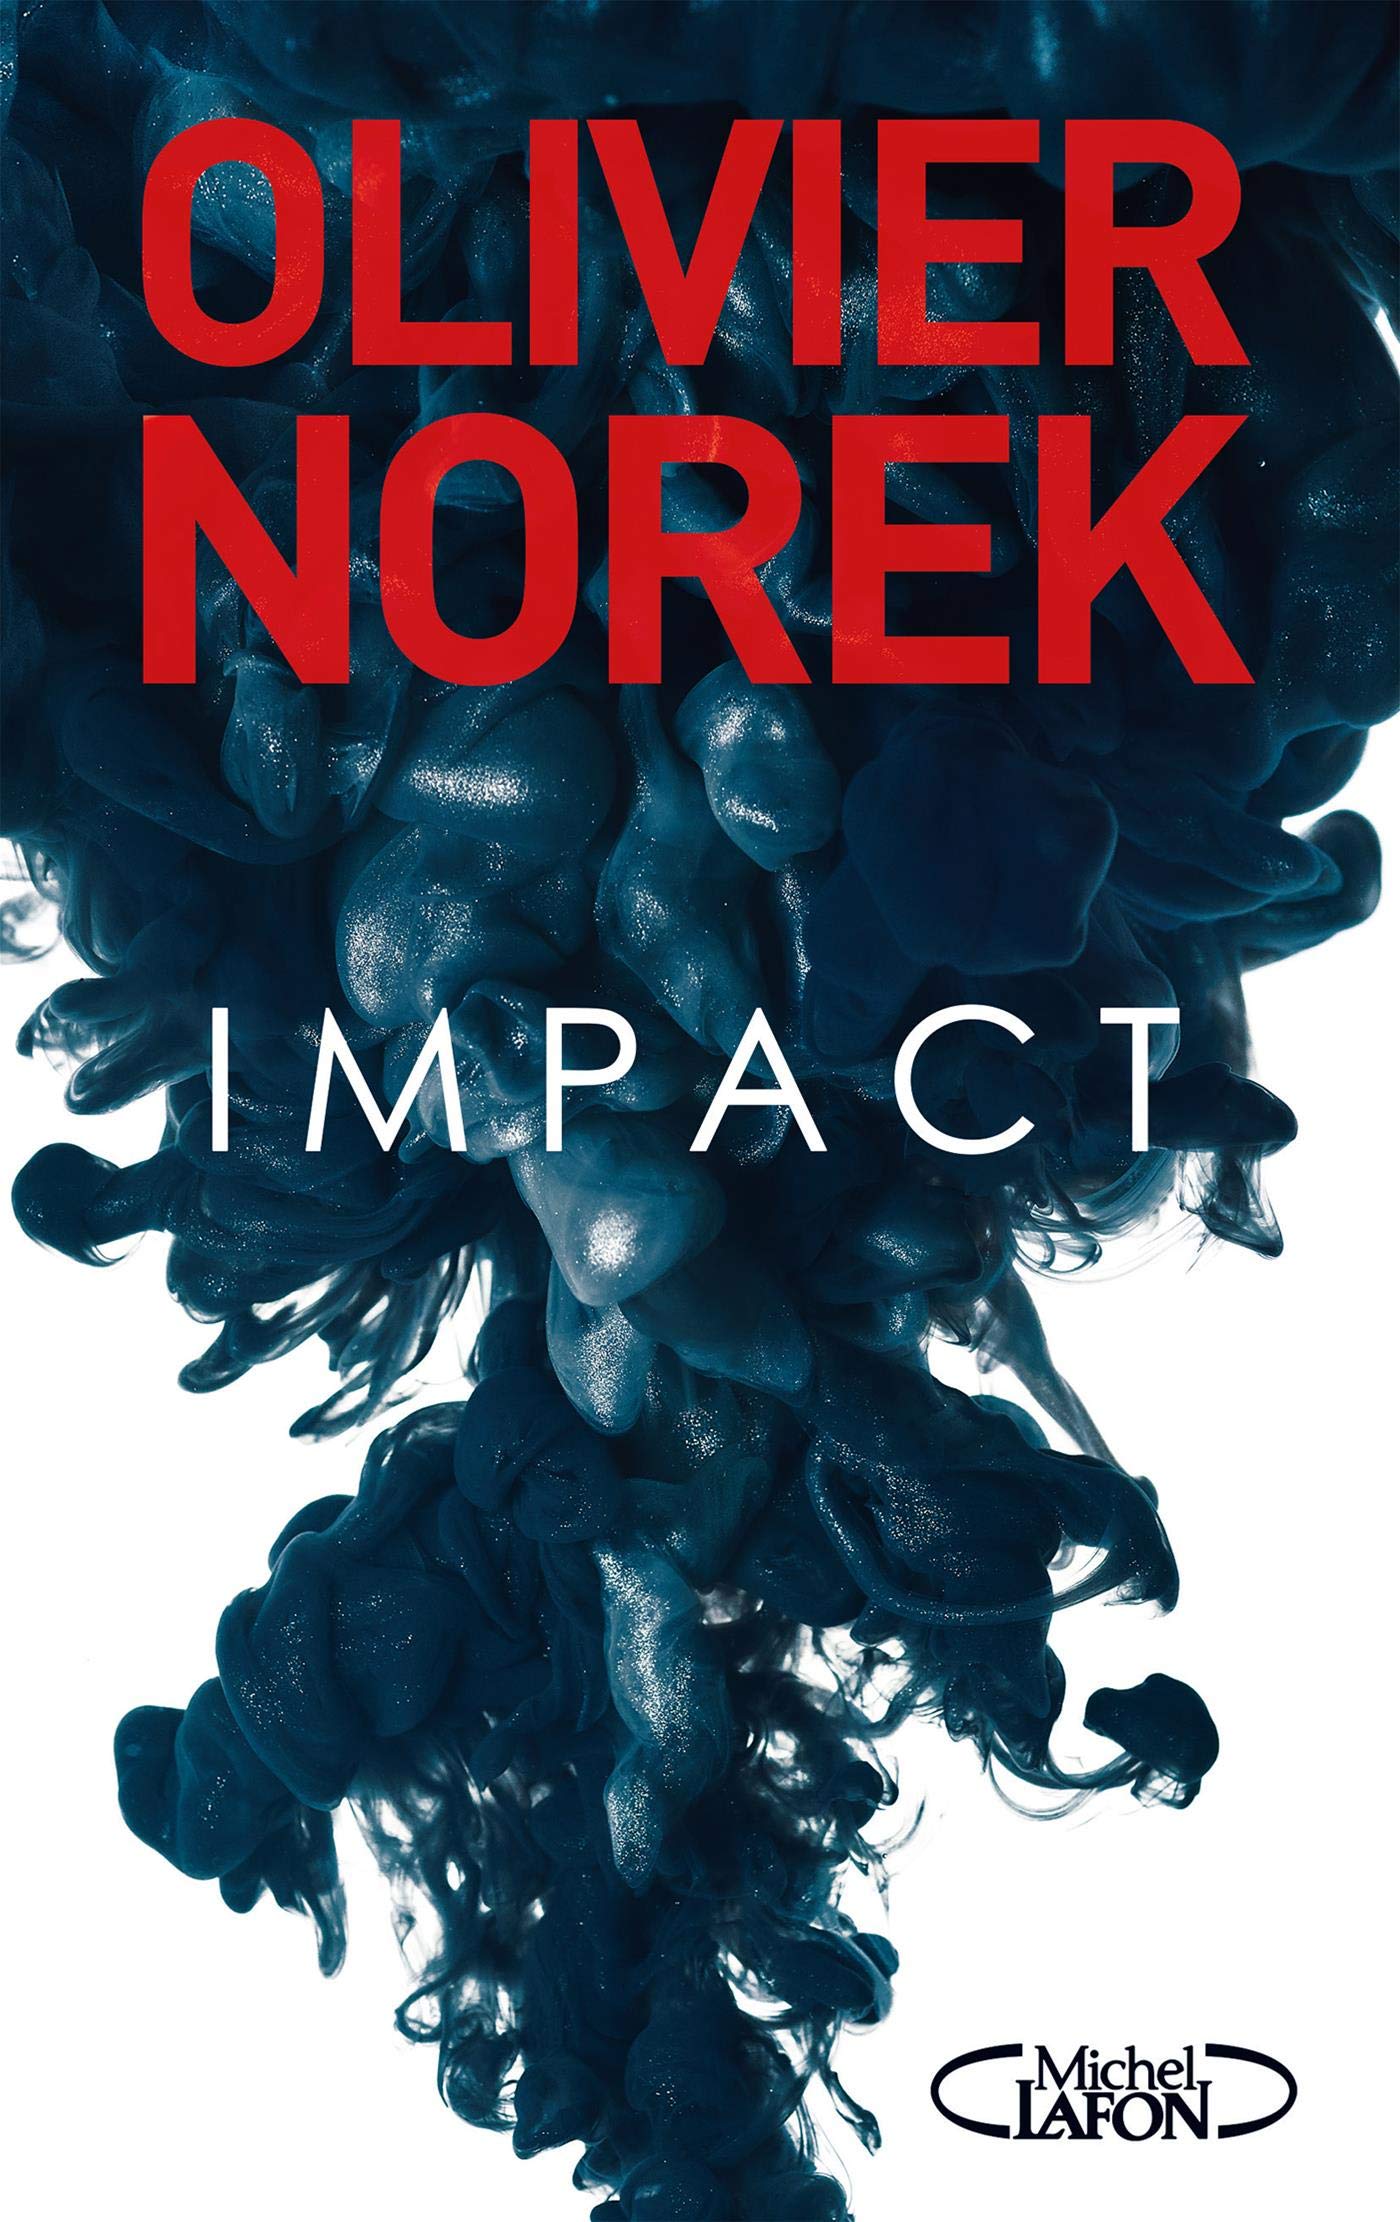 NOREK IMPACT